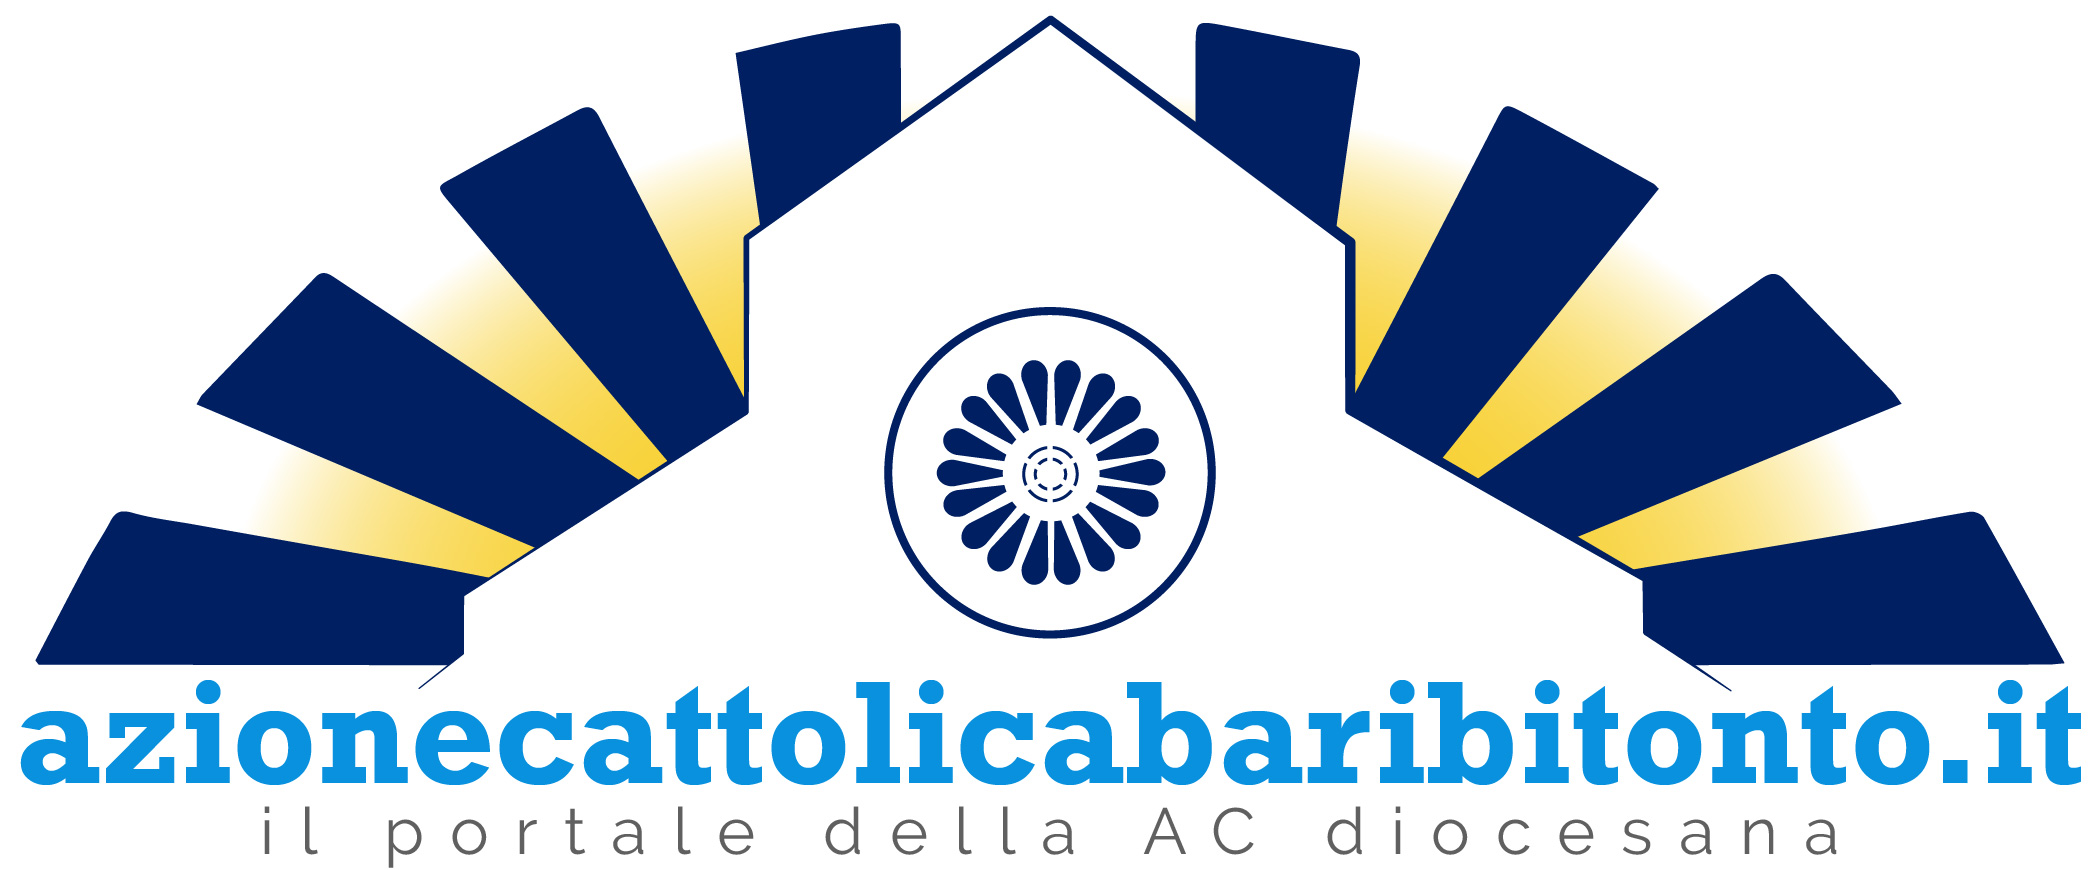 Azione Cattolica Bari-Bitonto